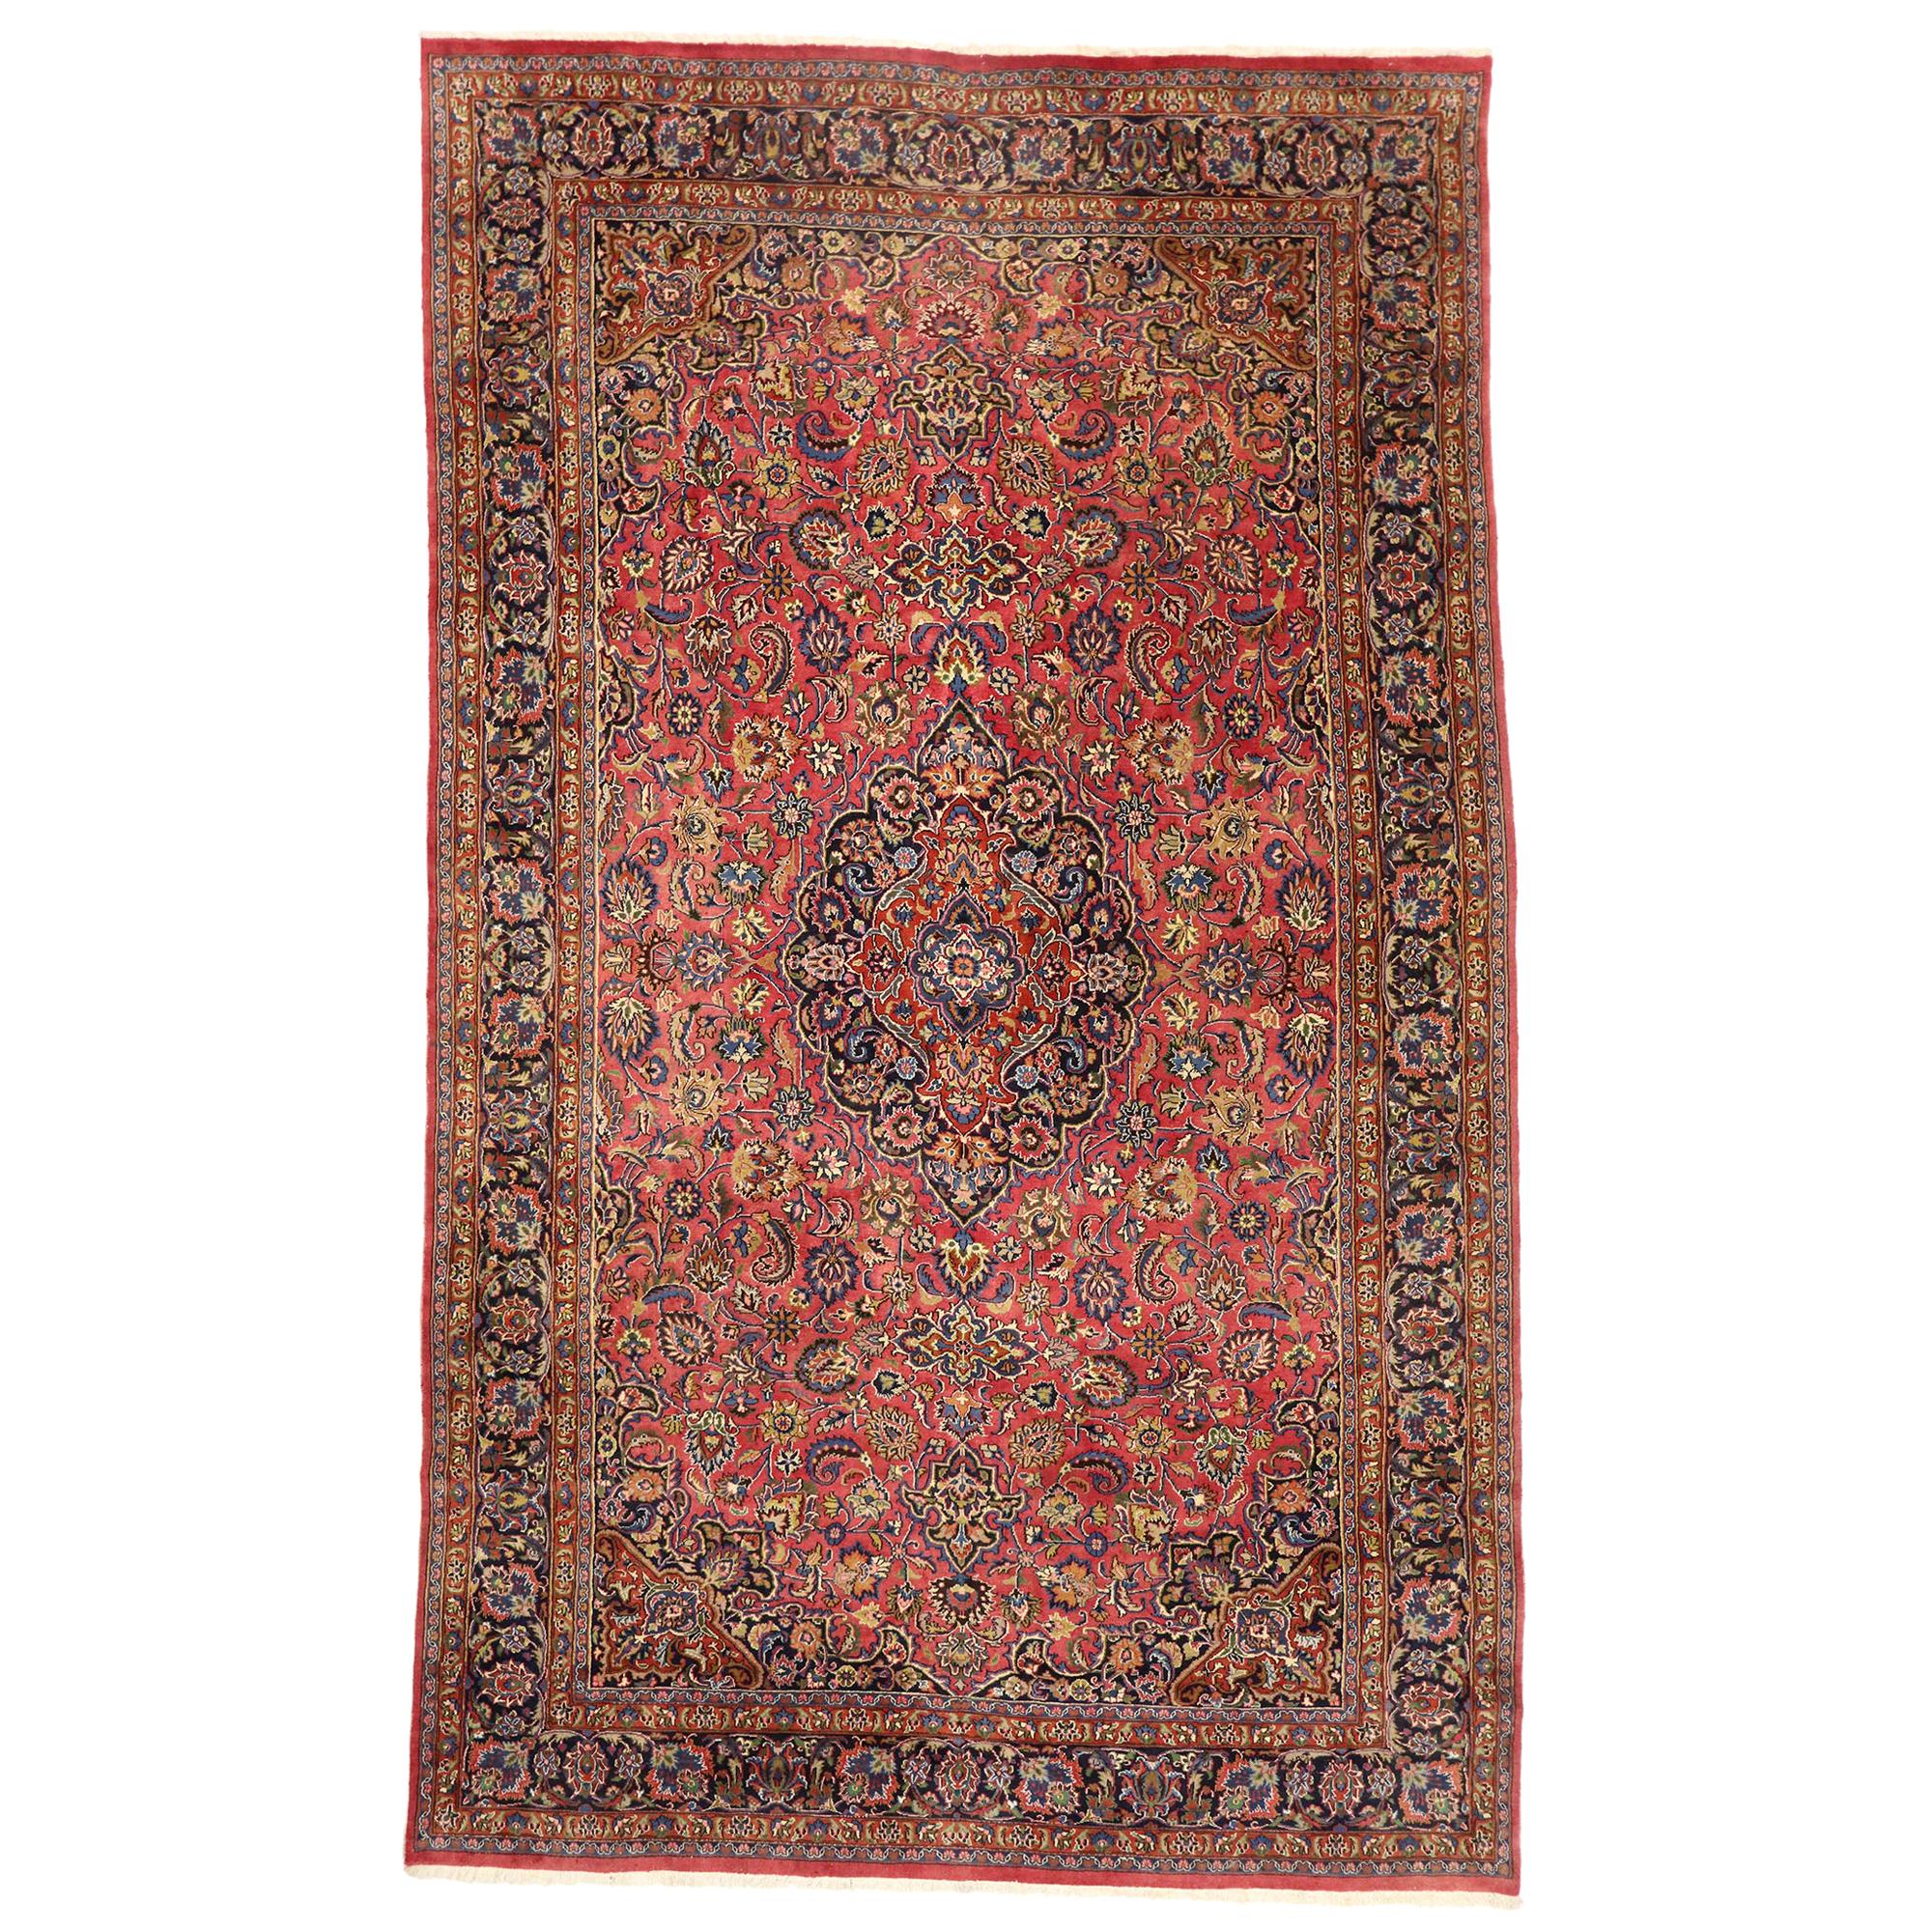 Persischer Mashhad-Teppich im Vintage-Stil, Regal Charm Meets Timeless Elegance